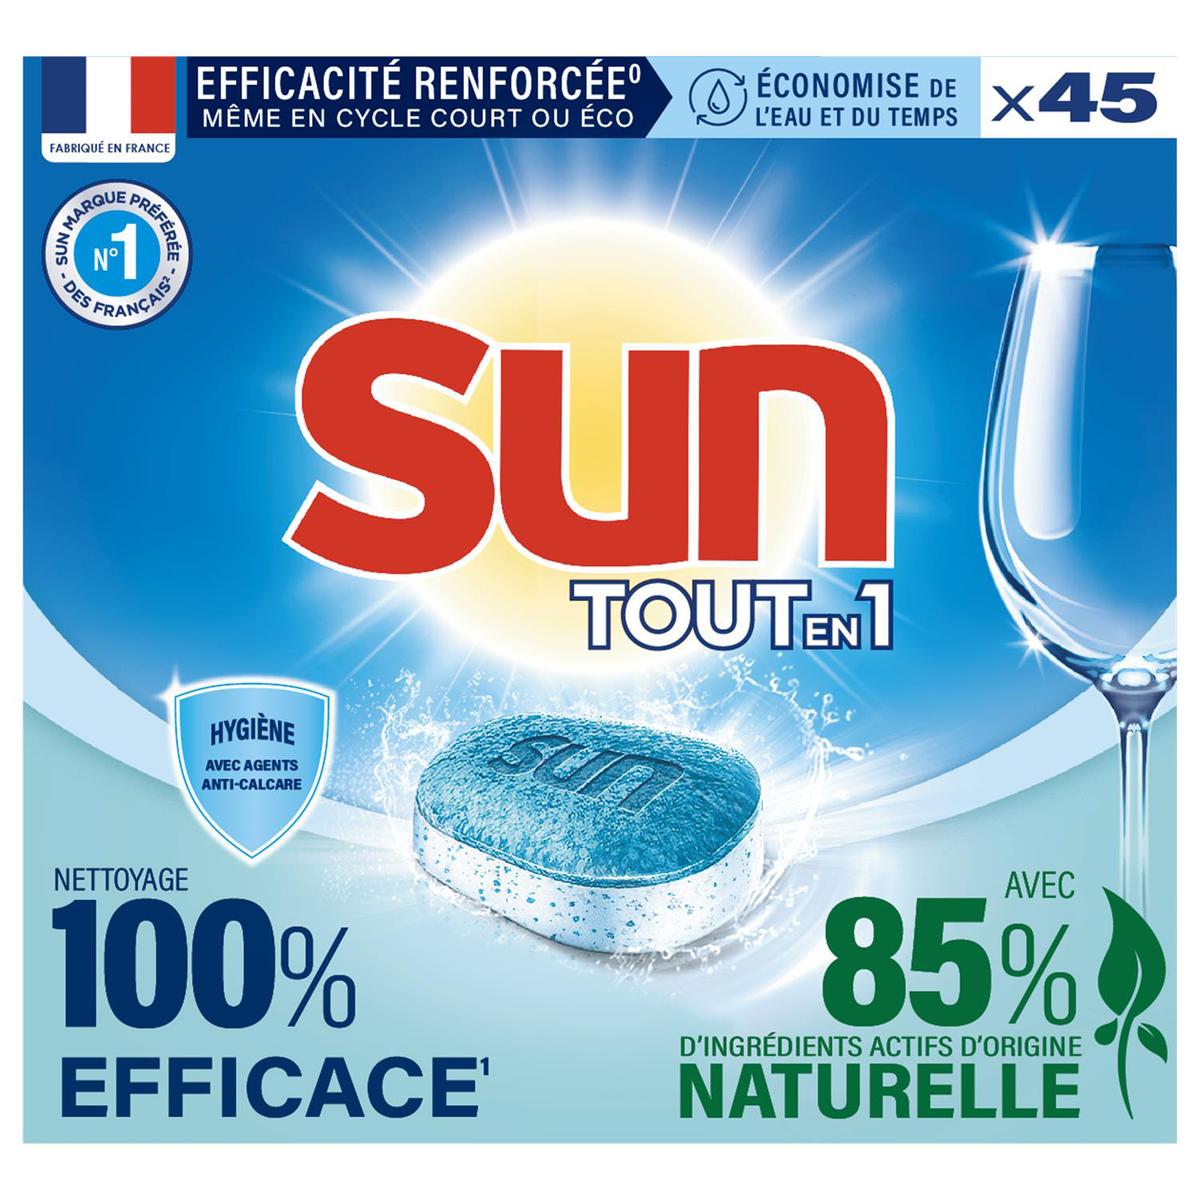 Tablettes Lave vaisselle Sun Tablettes Lave-Vaisselle Tout En 1